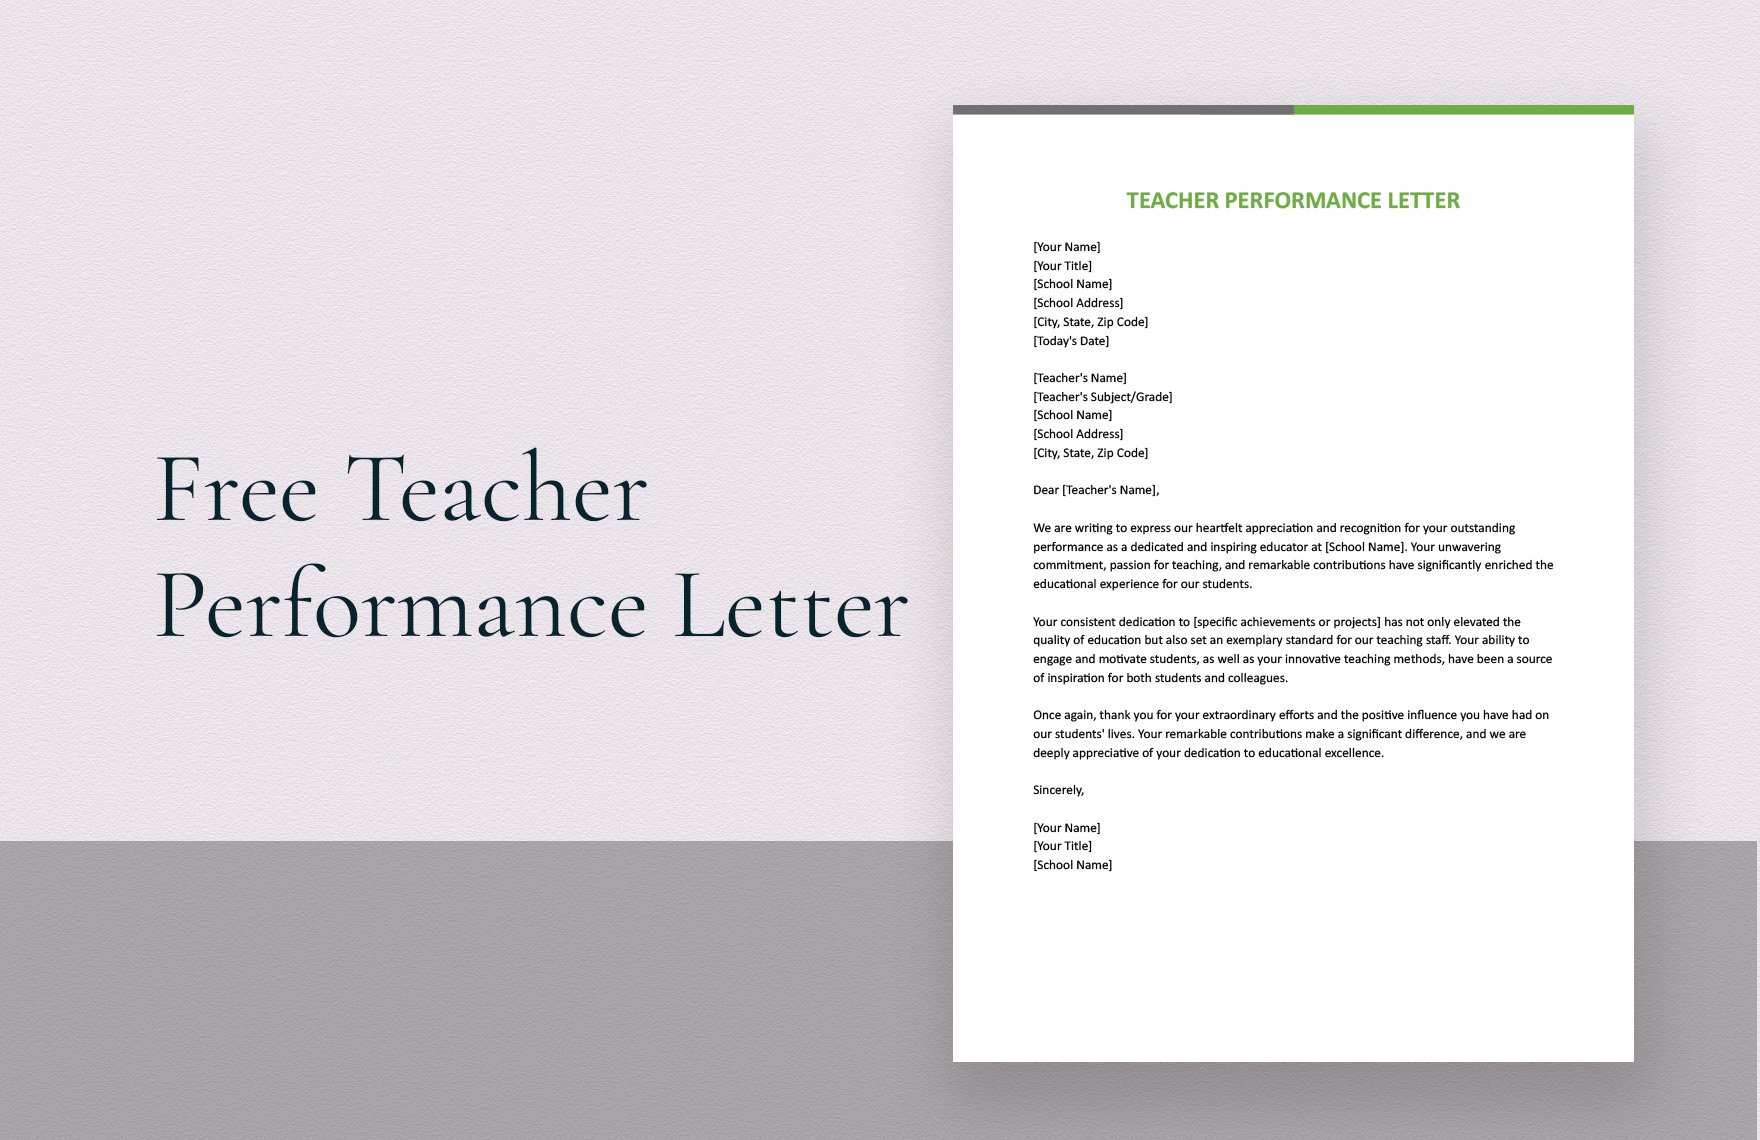 Teacher Performance Letter in Word, Google Docs